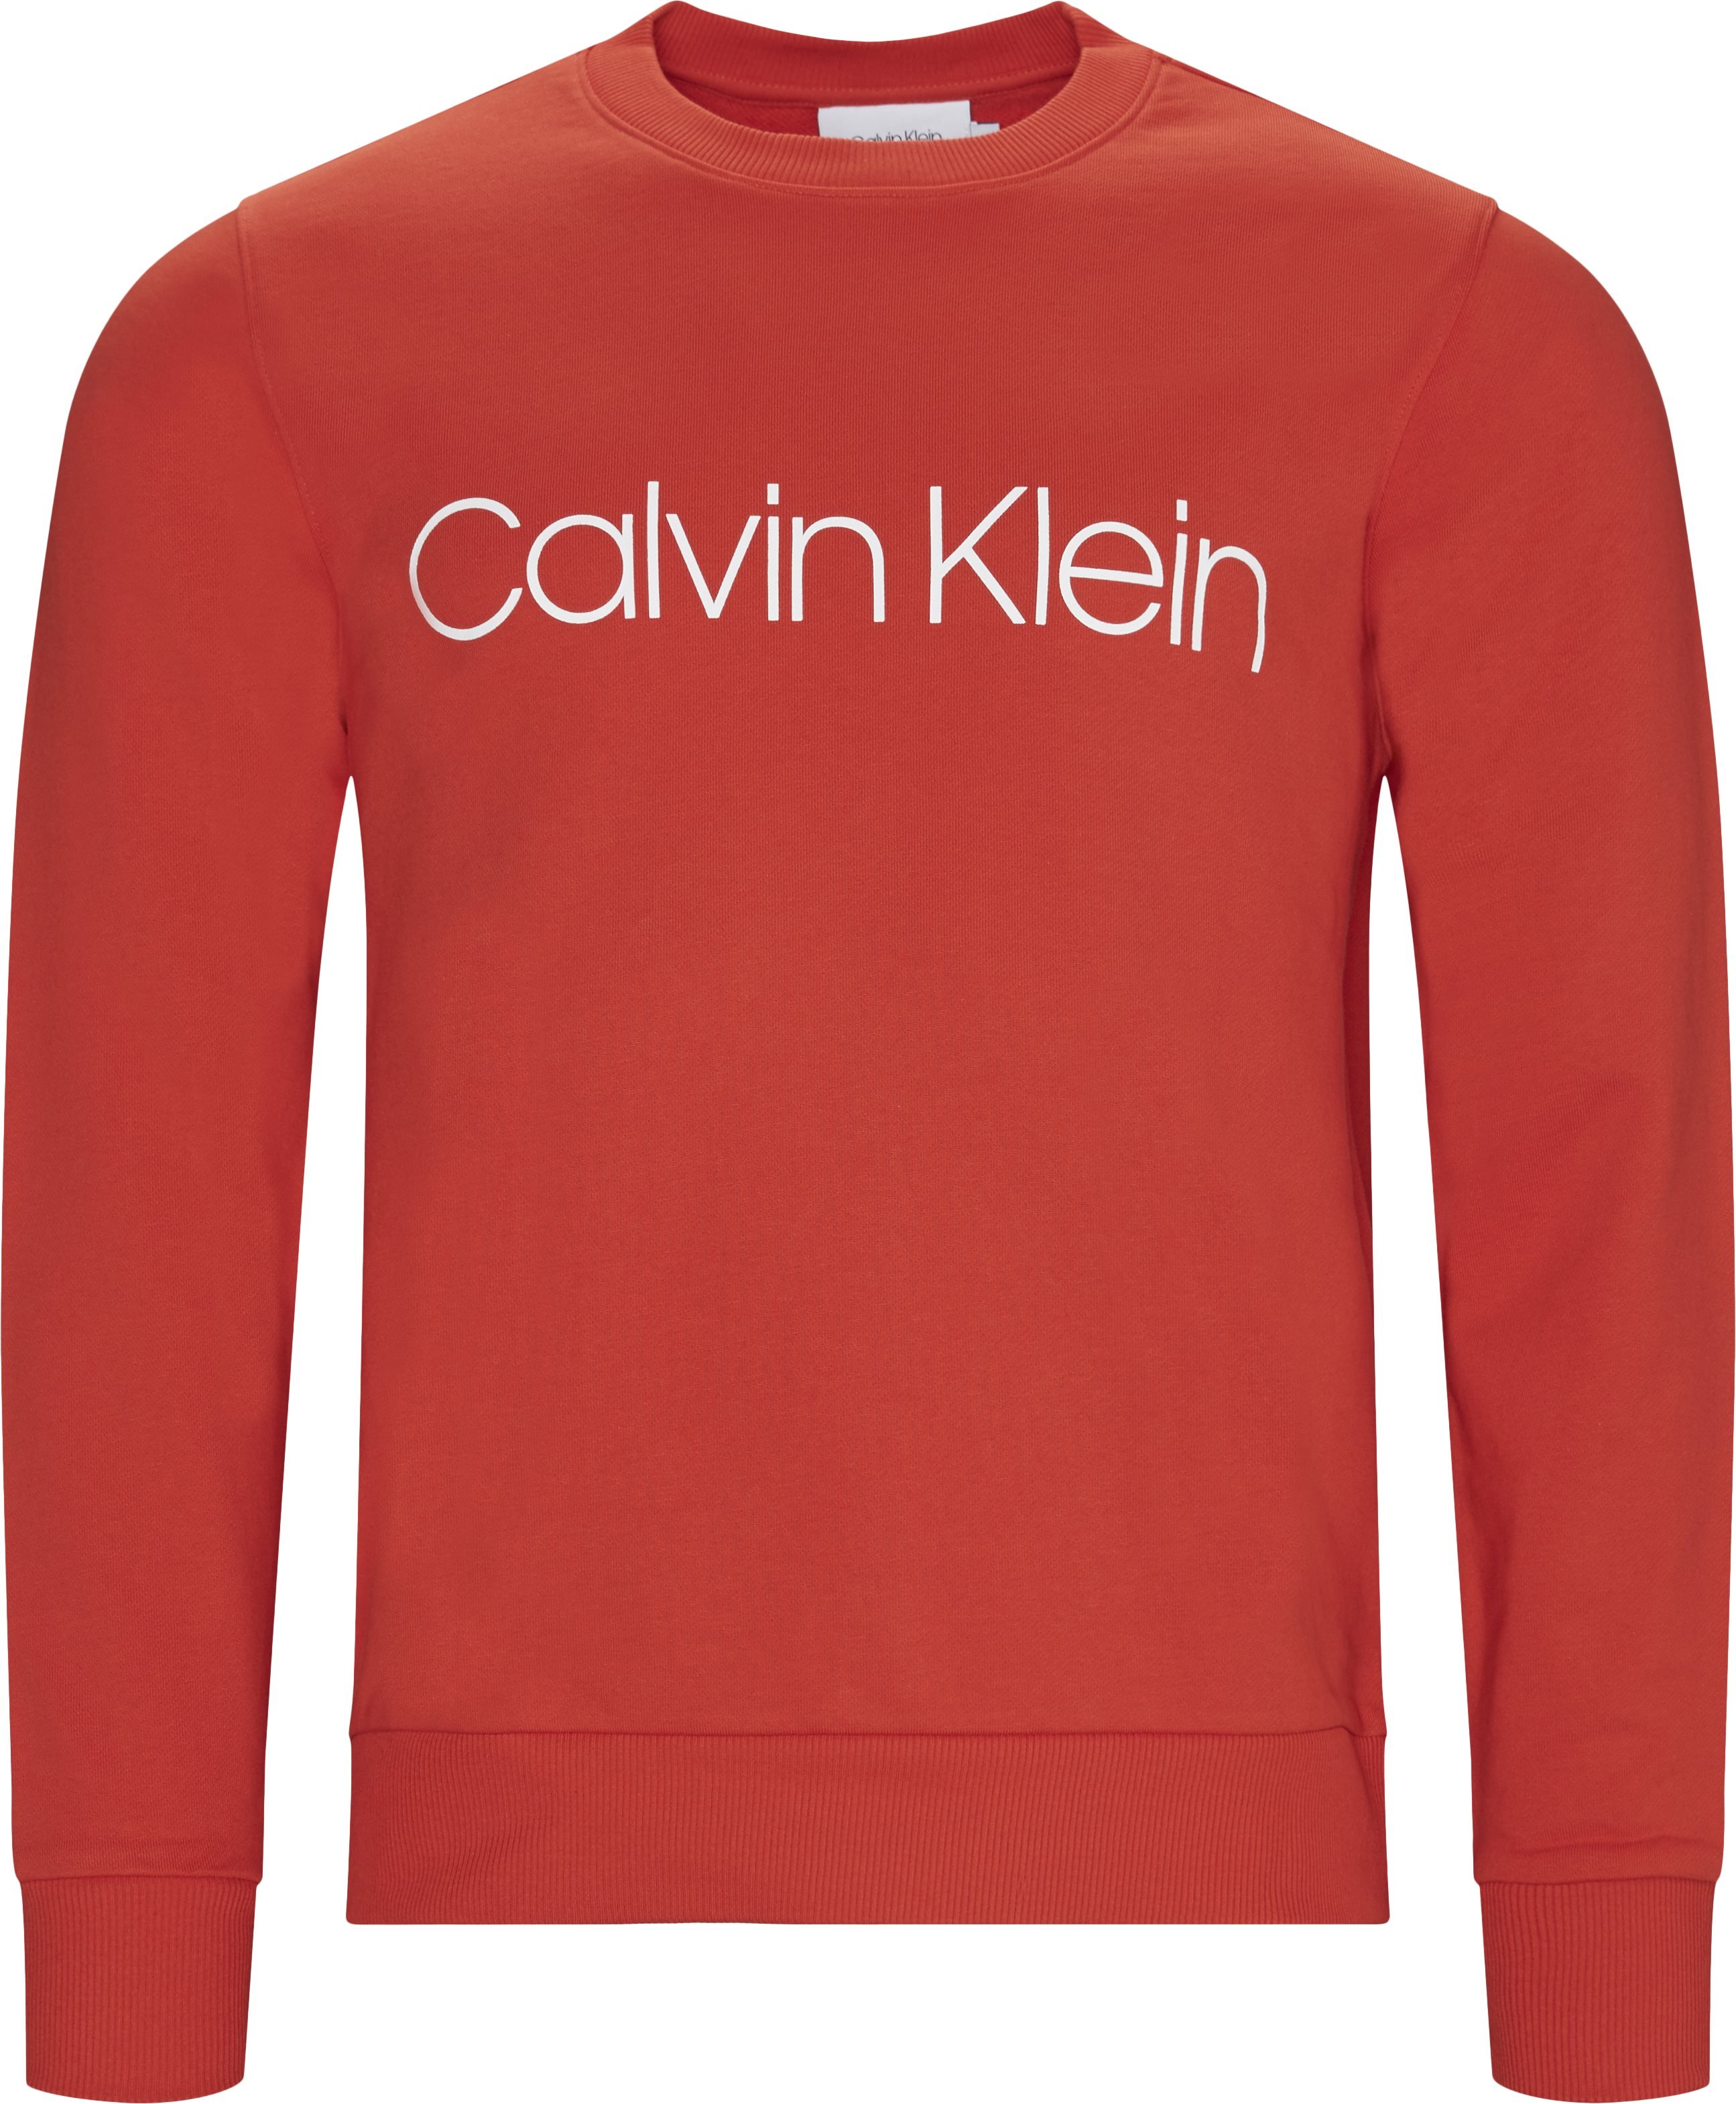 kaste støv i øjnene vitalitet Dårlig faktor K10K102724 COTTON LOGO SWEAT Sweatshirts RØD fra Calvin Klein 400 DKK